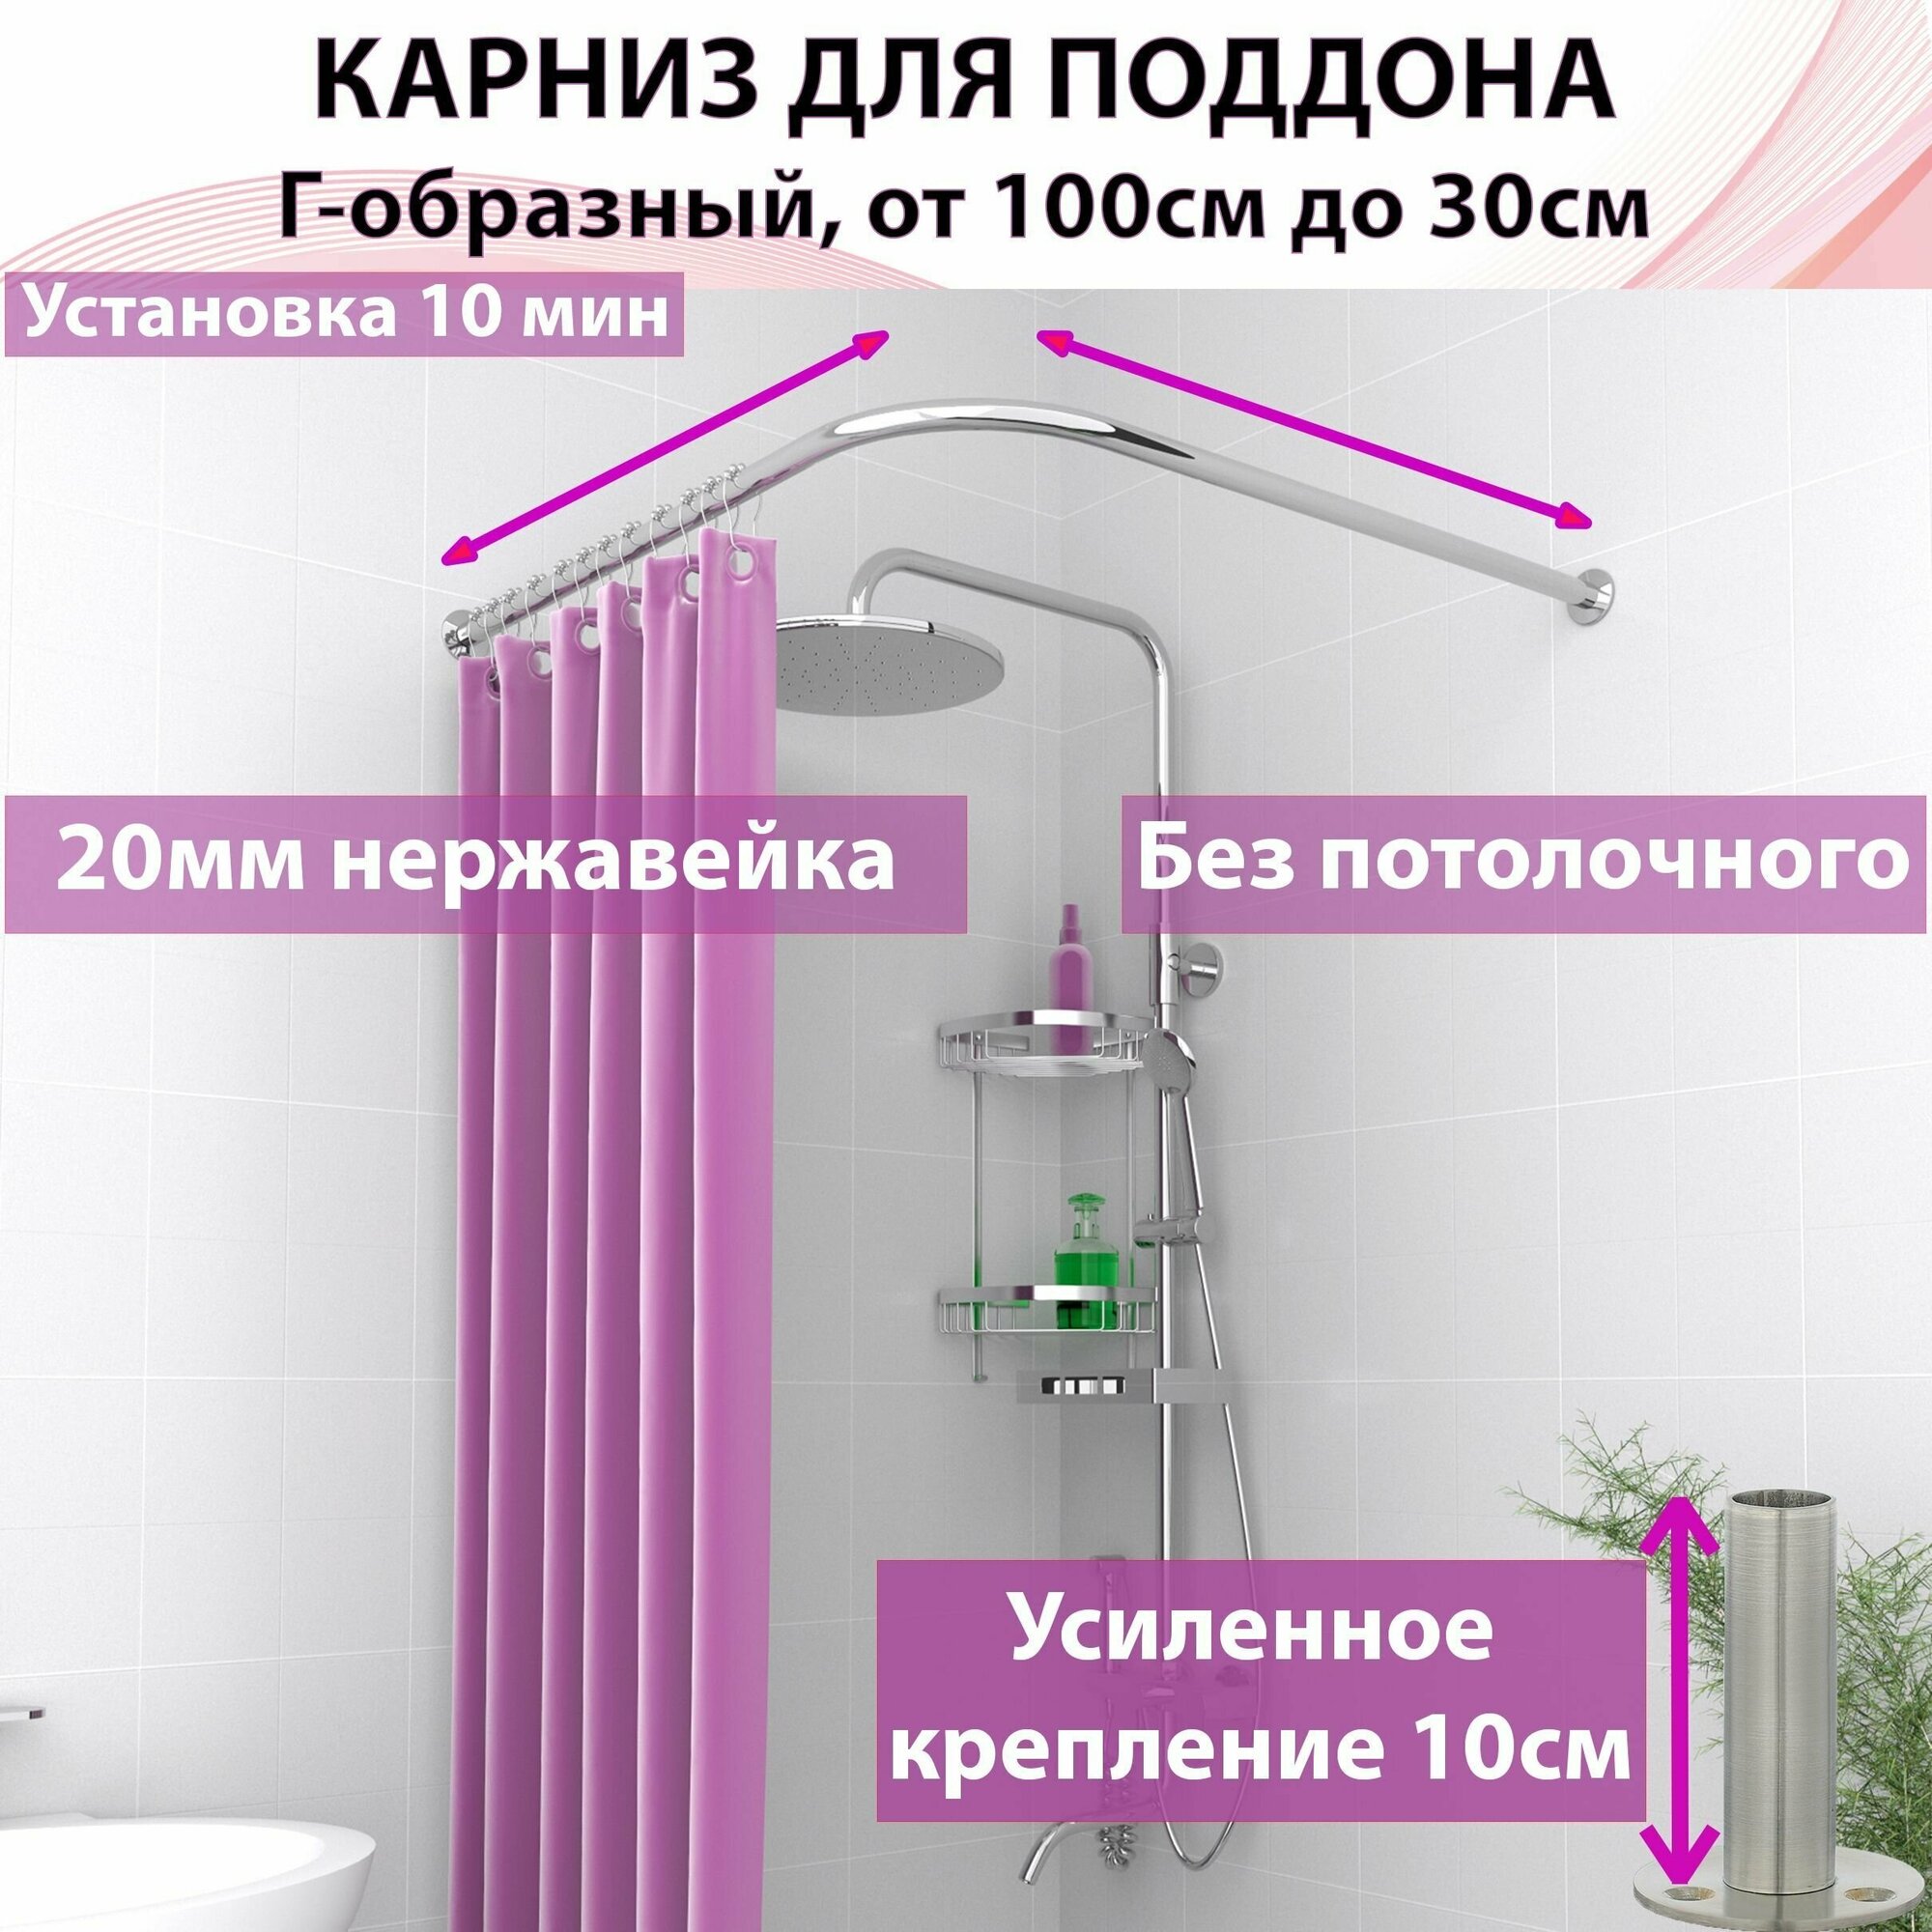 Карниз для поддона  душа ванны "Усиленный составной" от 100 см до 40 см для любого Г-образного или углового поддона